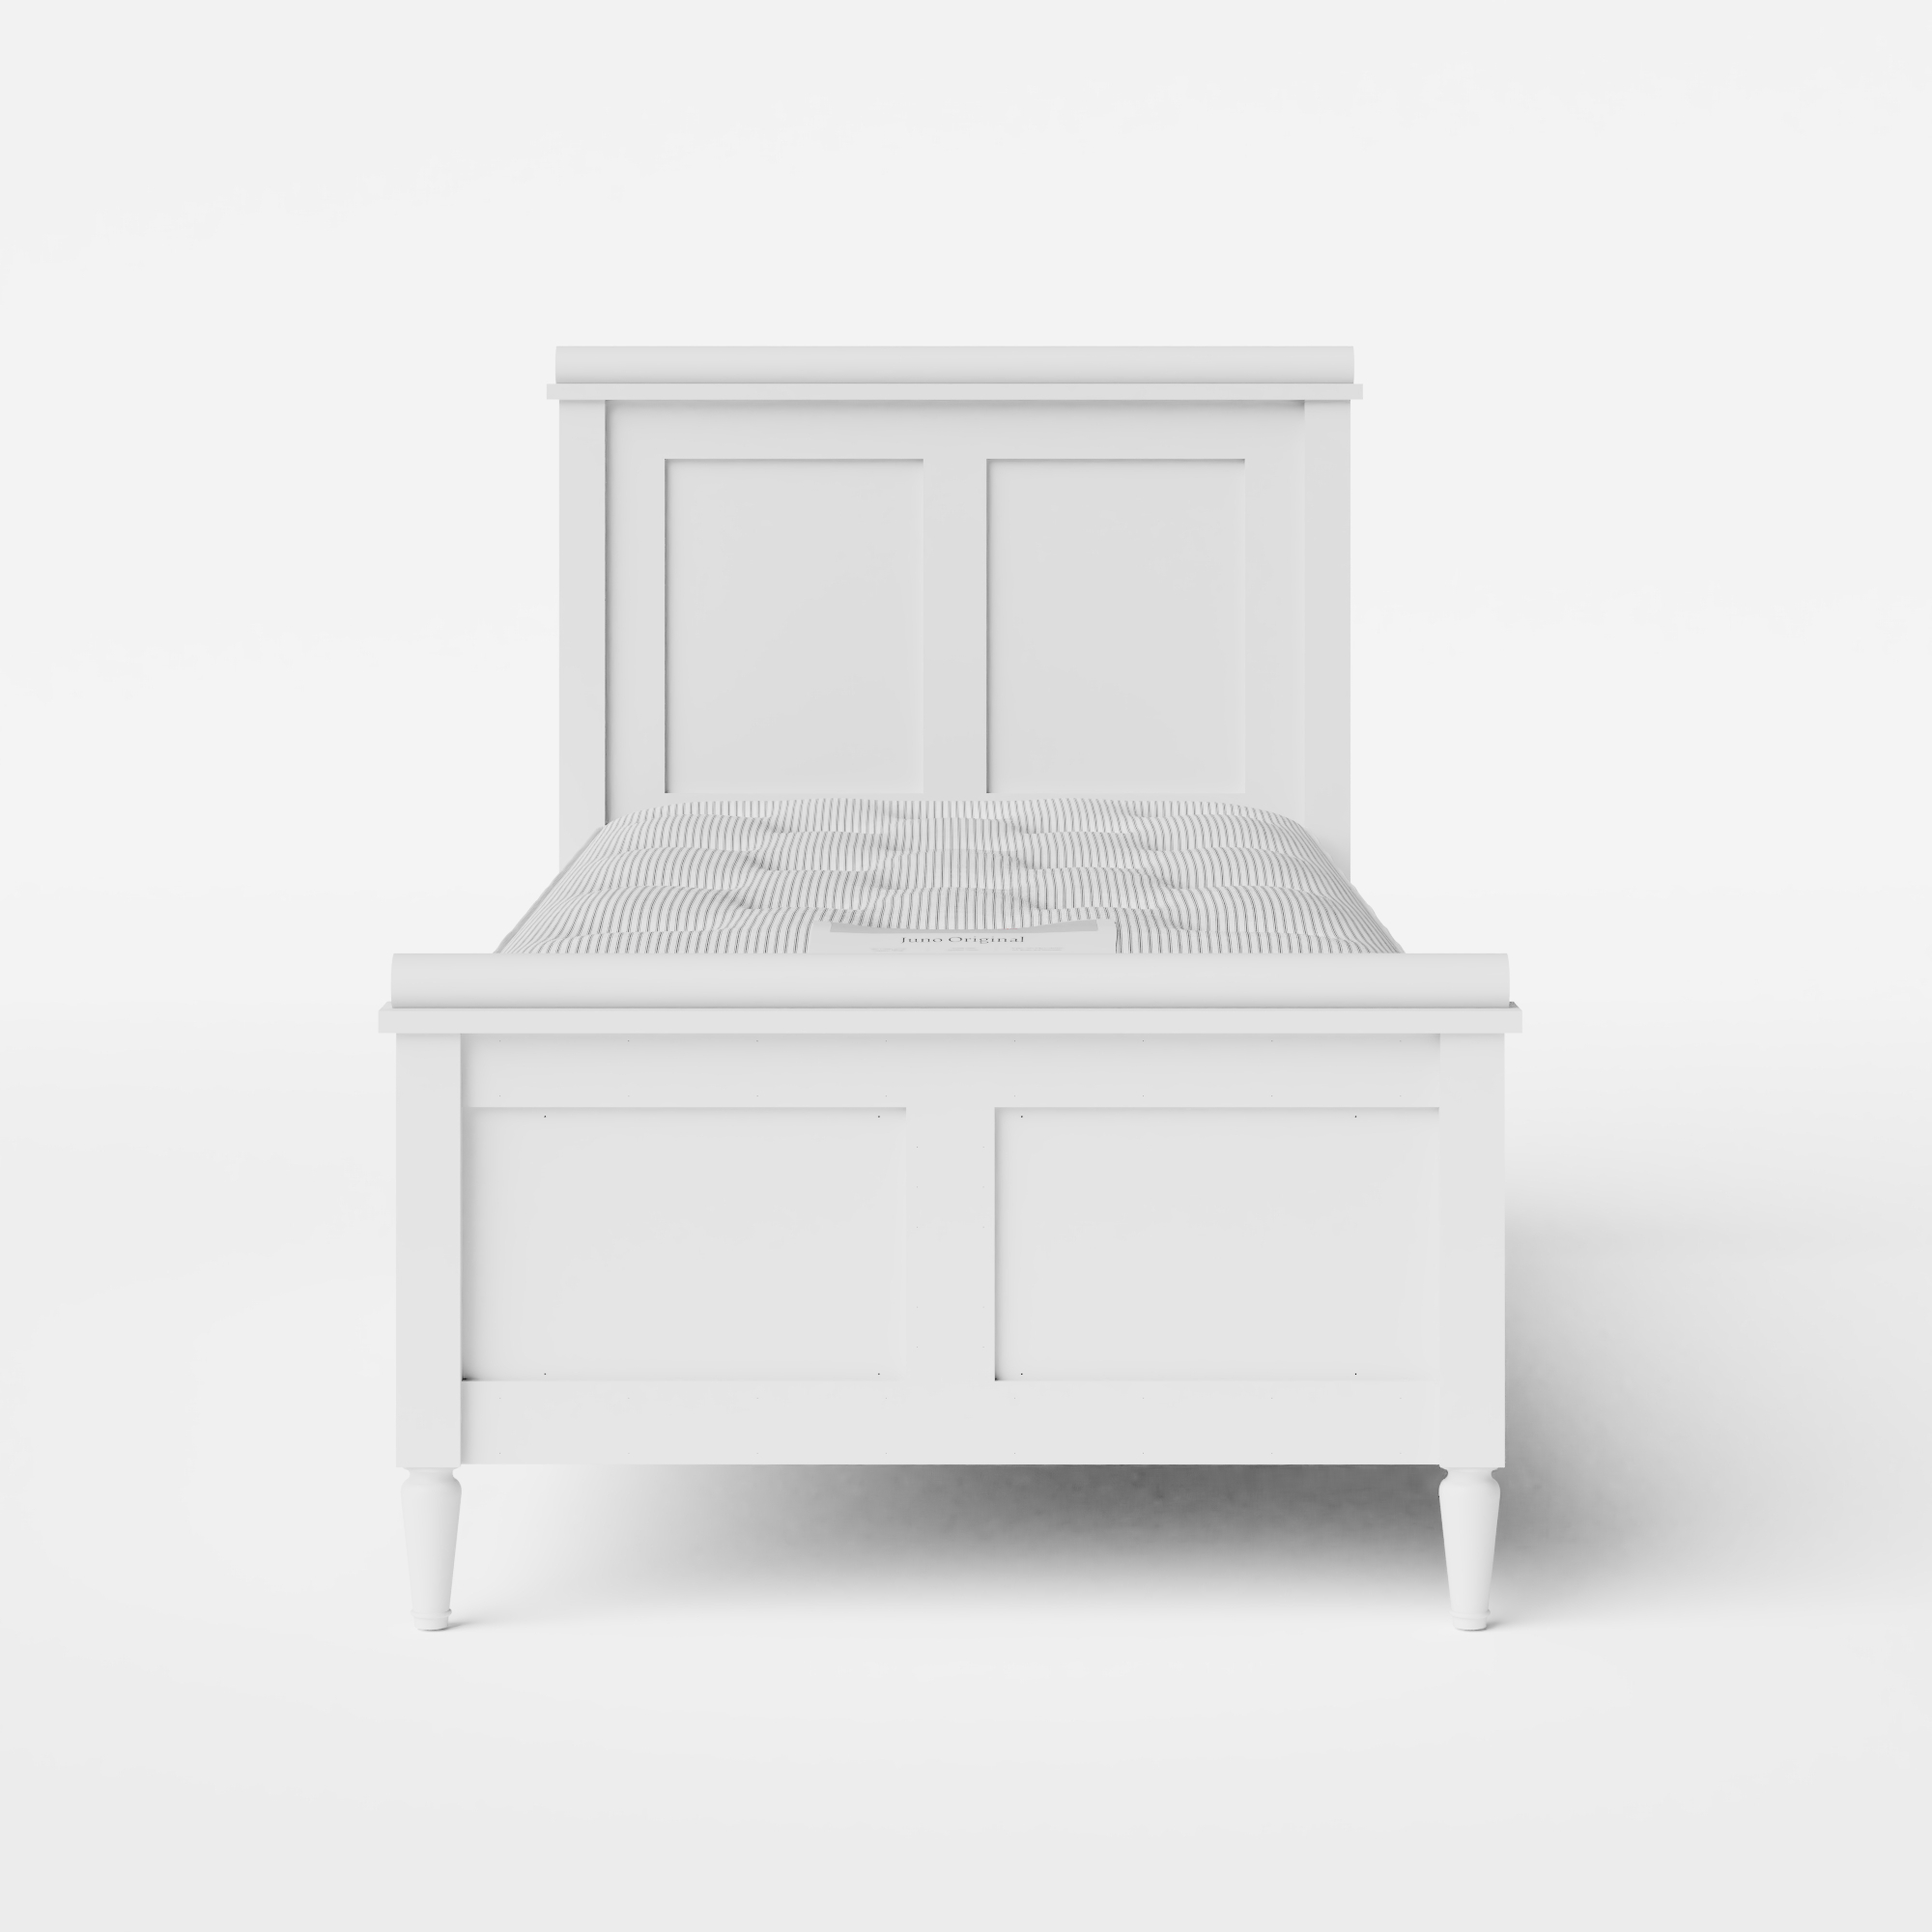 Nocturne Painted letto singolo in legno bianco con materasso